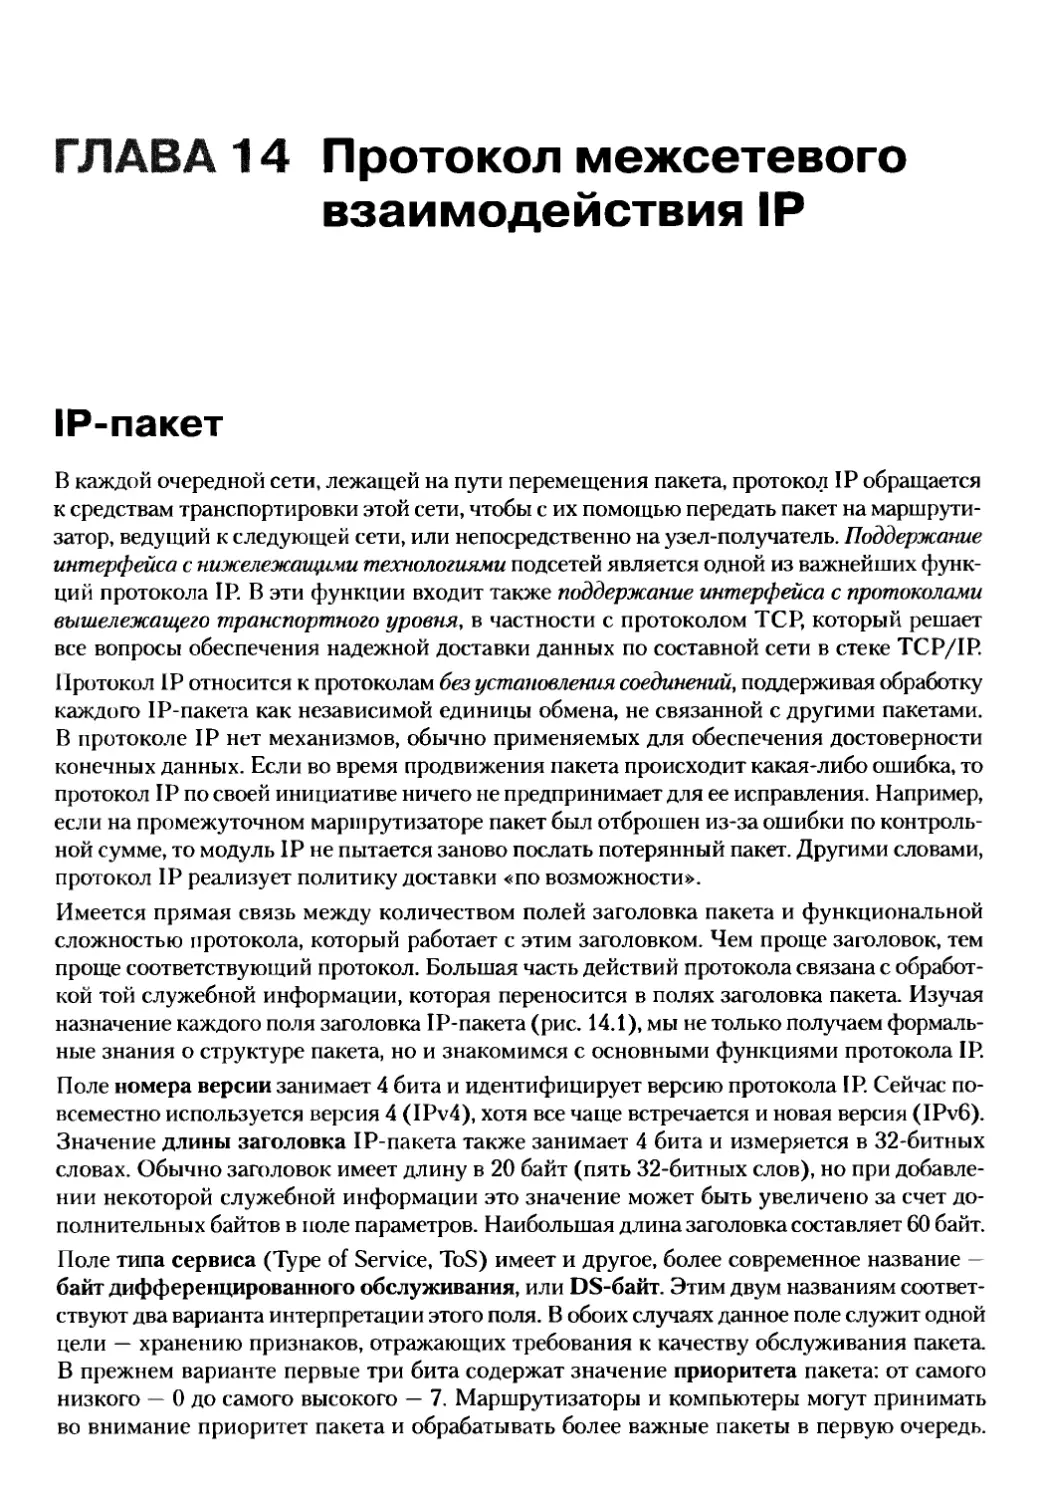 14. Протокол межсетевого взаимодействия IP